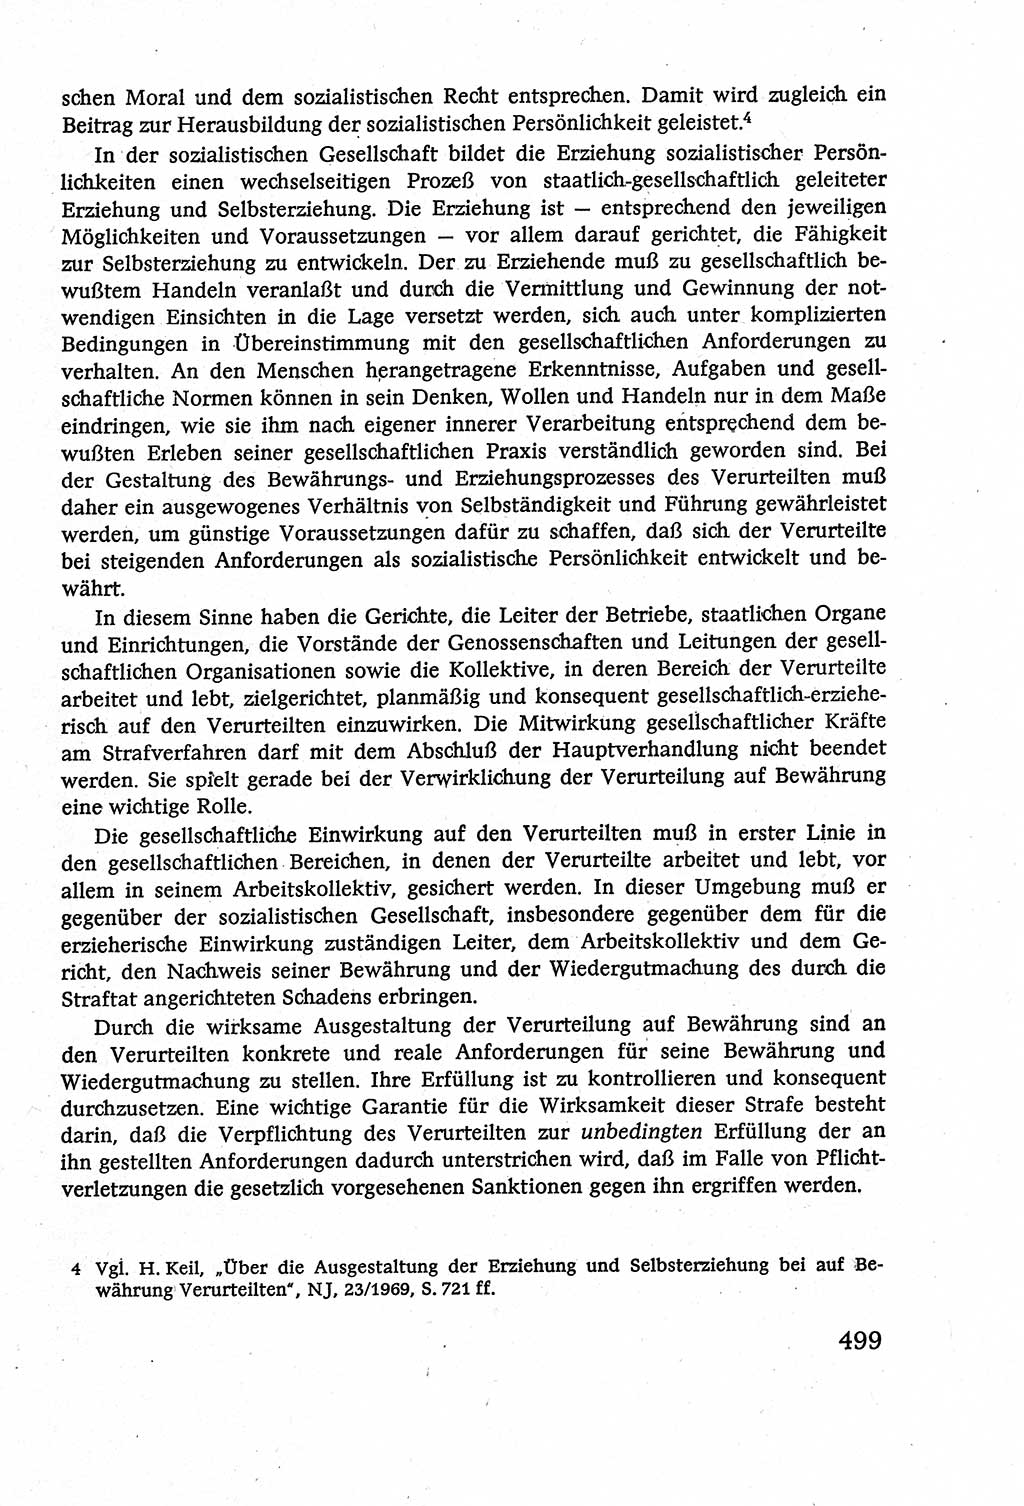 Strafverfahrensrecht [Deutsche Demokratische Republik (DDR)], Lehrbuch 1977, Seite 499 (Strafverf.-R. DDR Lb. 1977, S. 499)